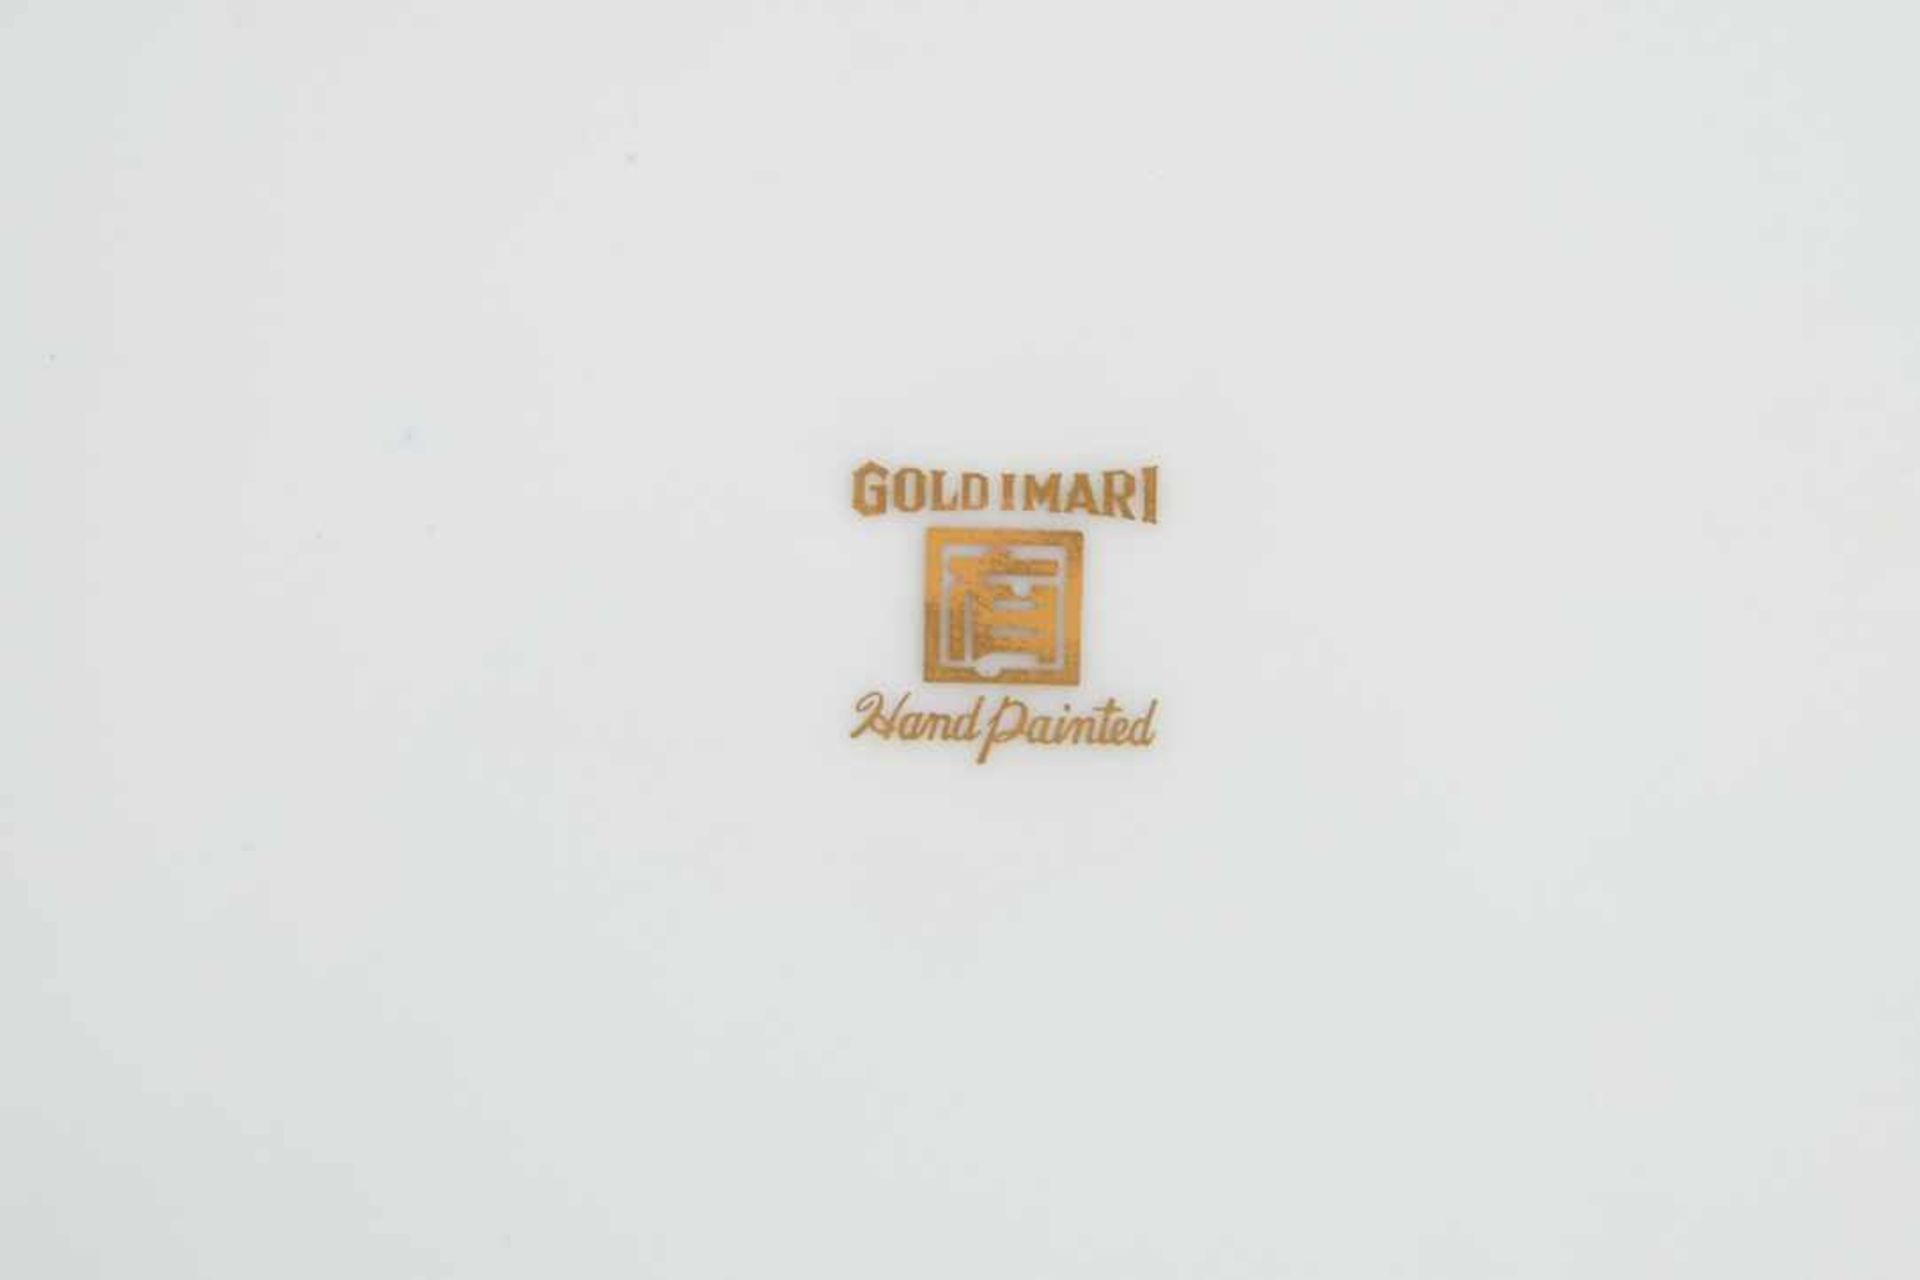 Gold-Imari. Zierteller. 20. Jahrhundert, gemarkt. Durchmesser 31,5 cm - Bild 7 aus 7